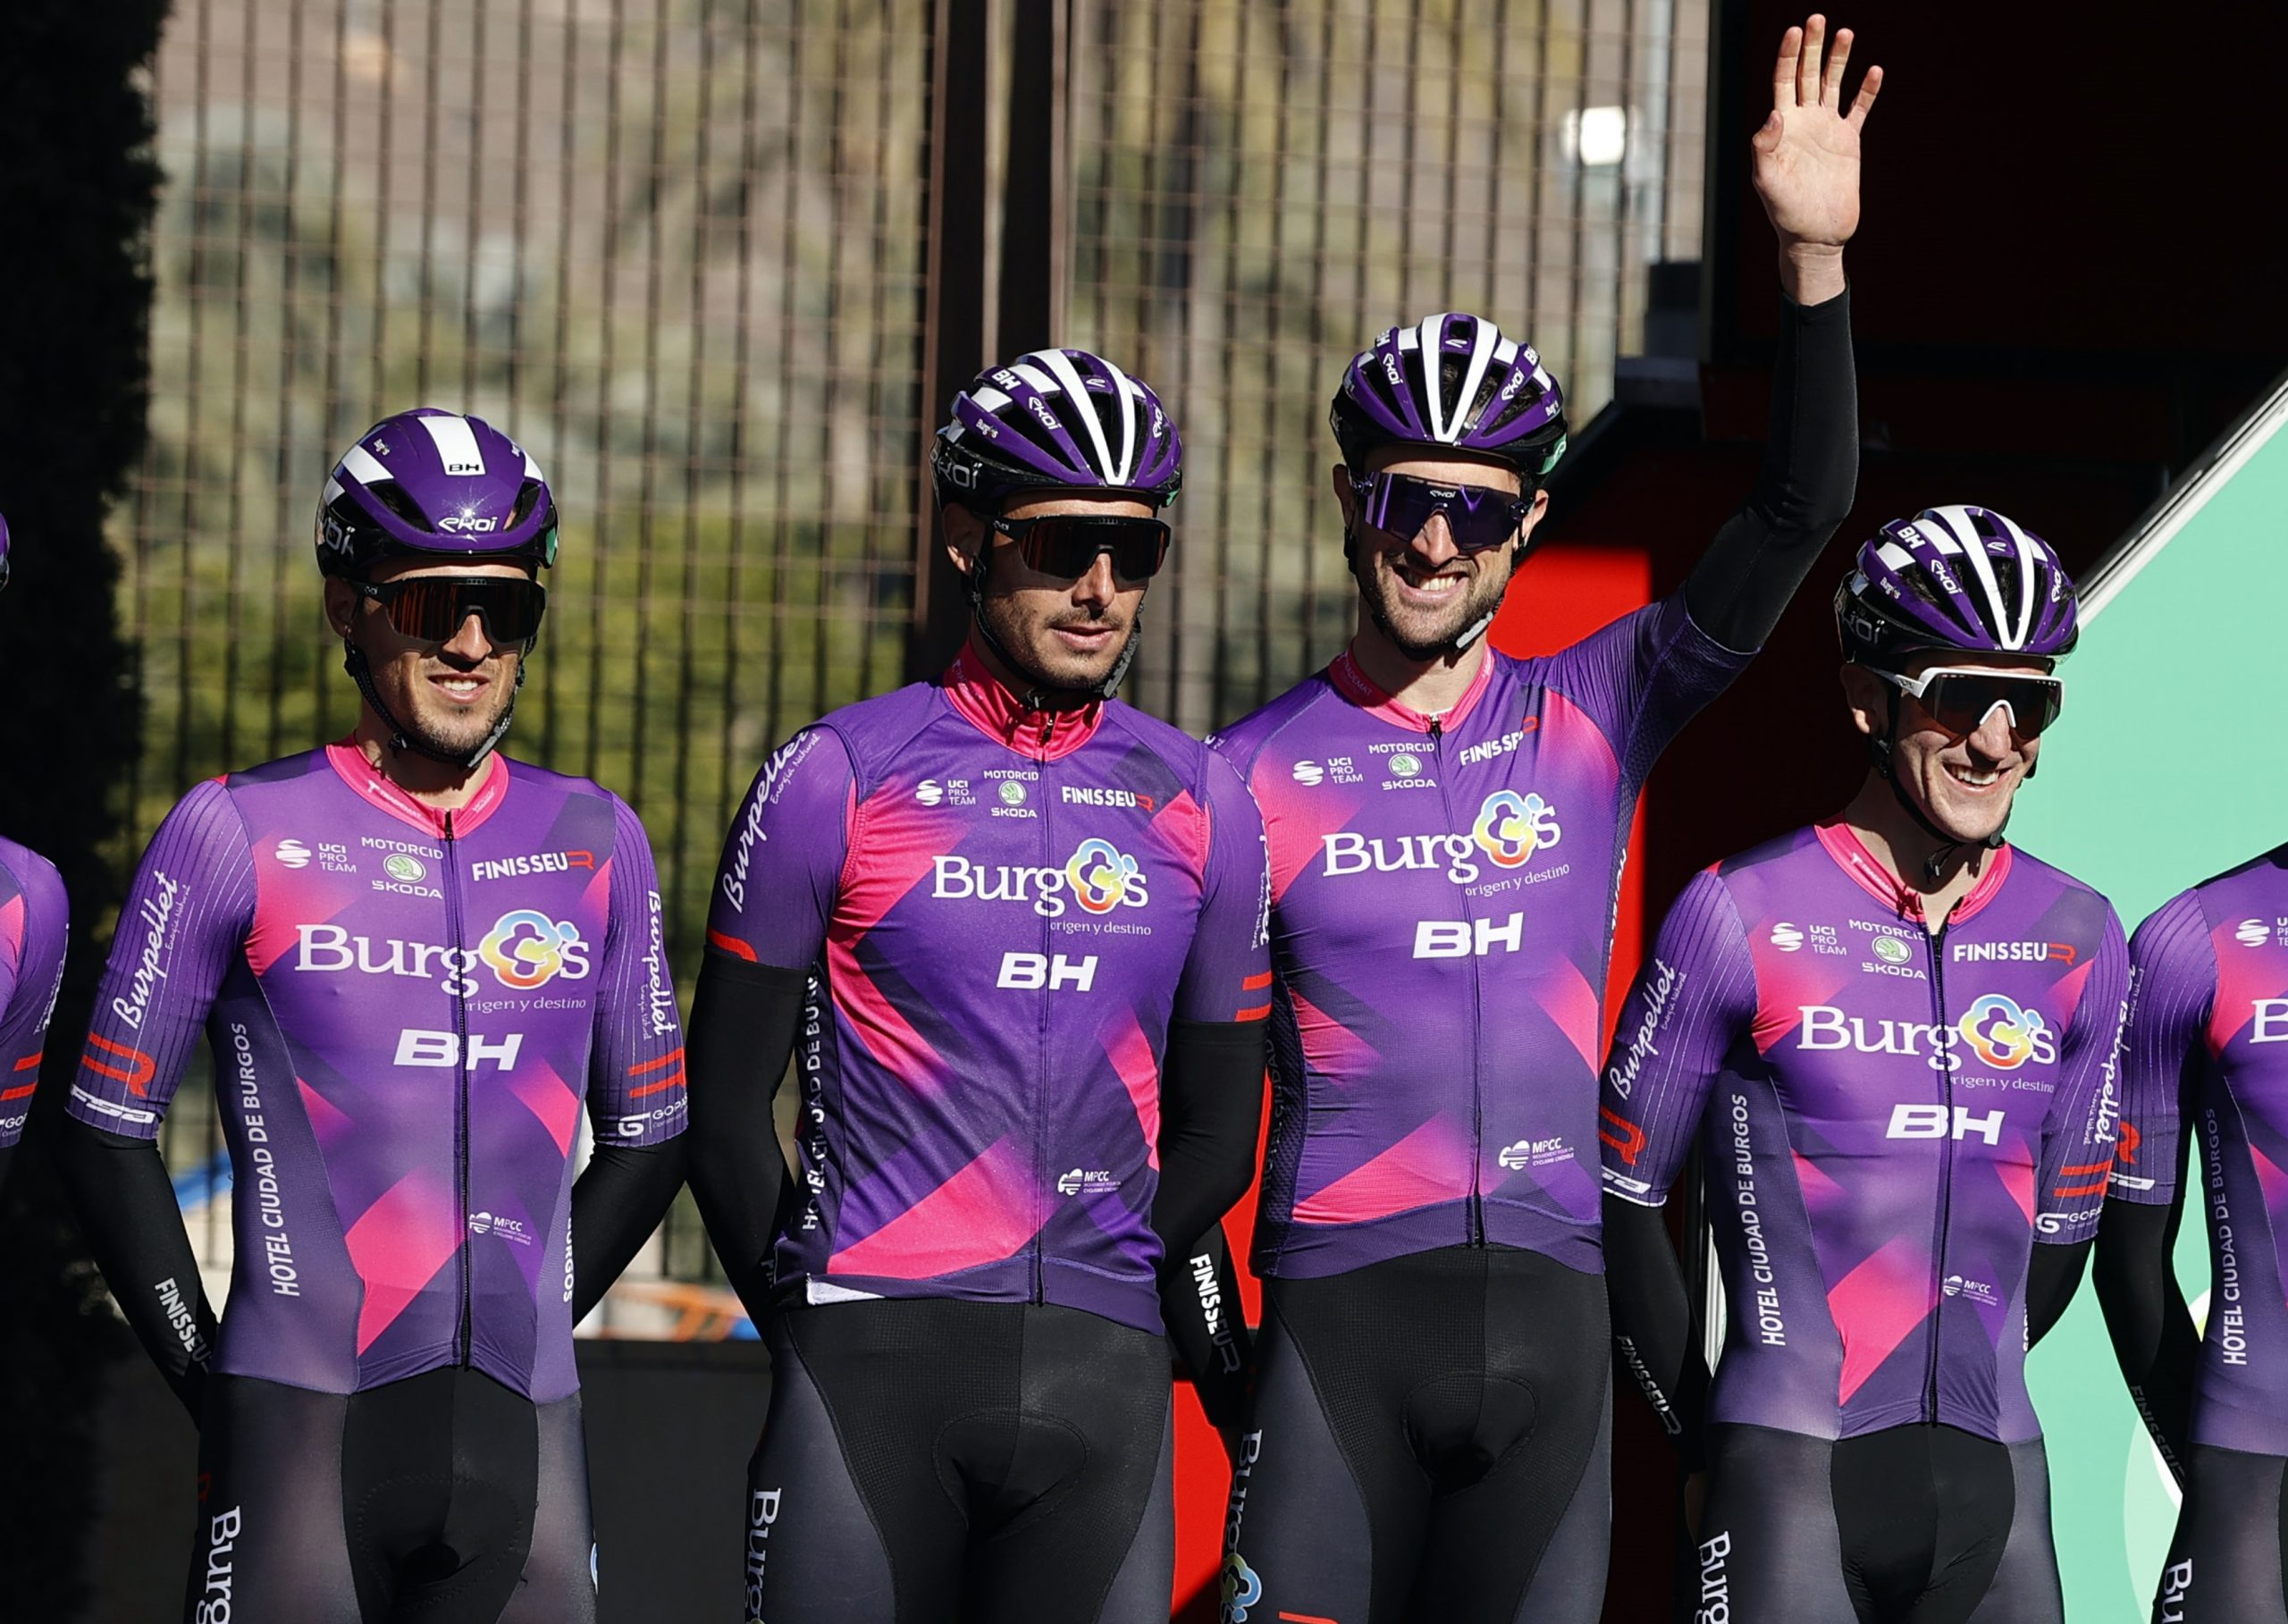 Confianza y ambición en nuestra sexta Vuelta a España